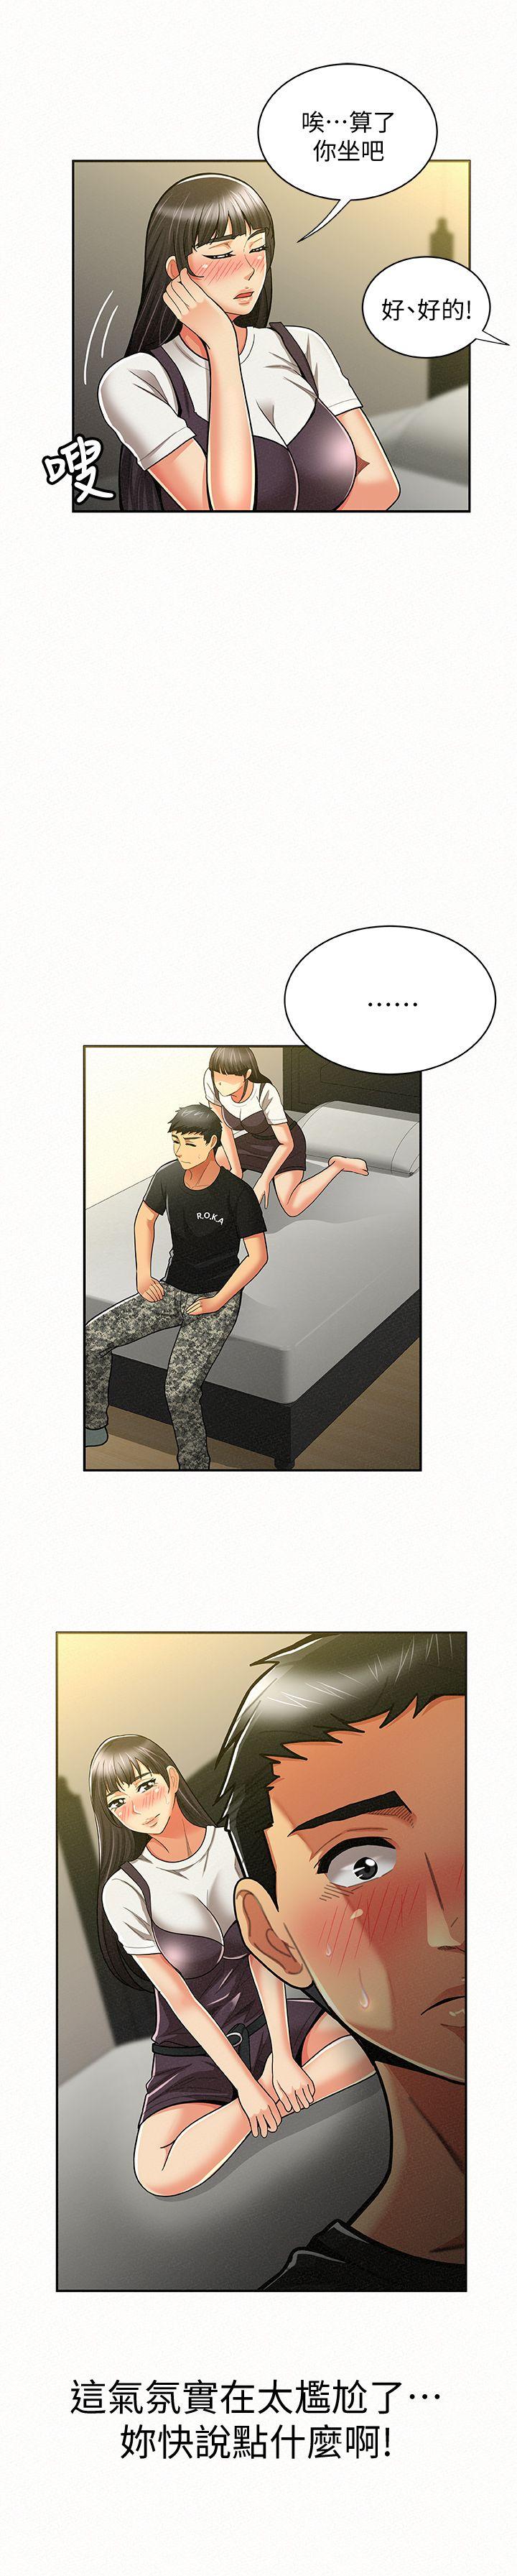 韩国污漫画 報告夫人 第11话-终于到手的诱惑机会 10